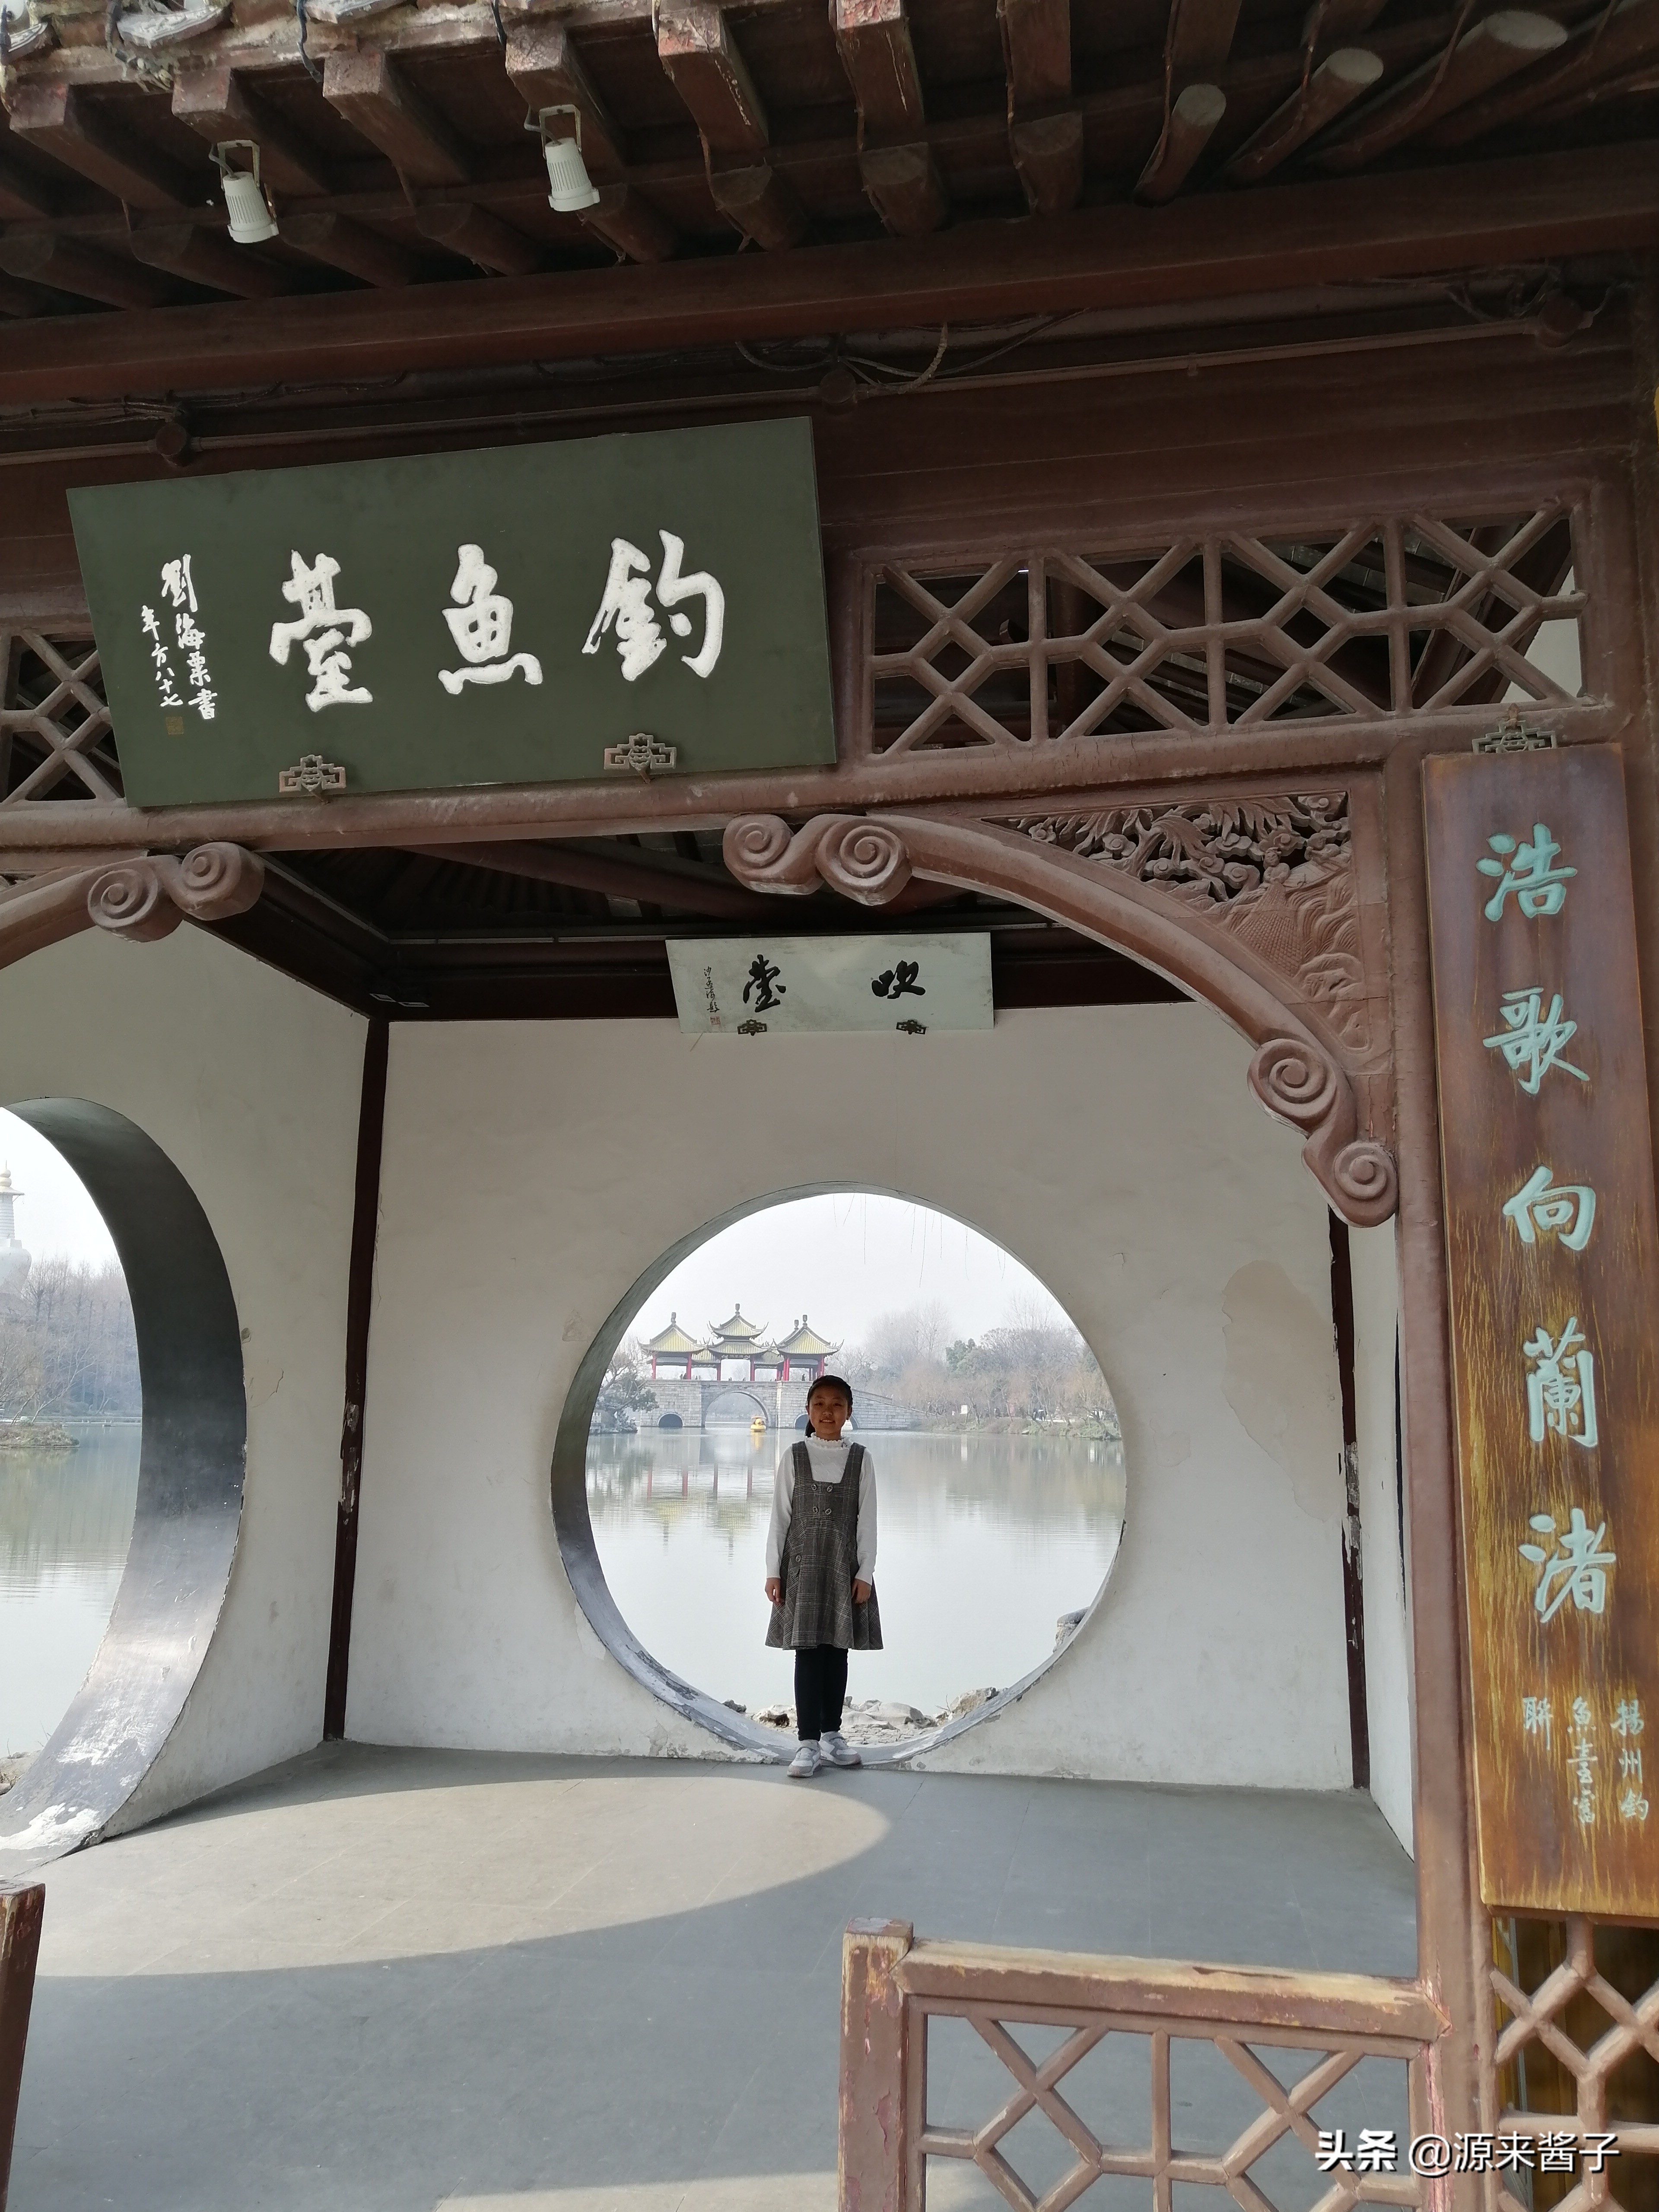 中国最秀美的五亭桥！还有二十四桥明月夜！扬州瘦西湖人间大美！